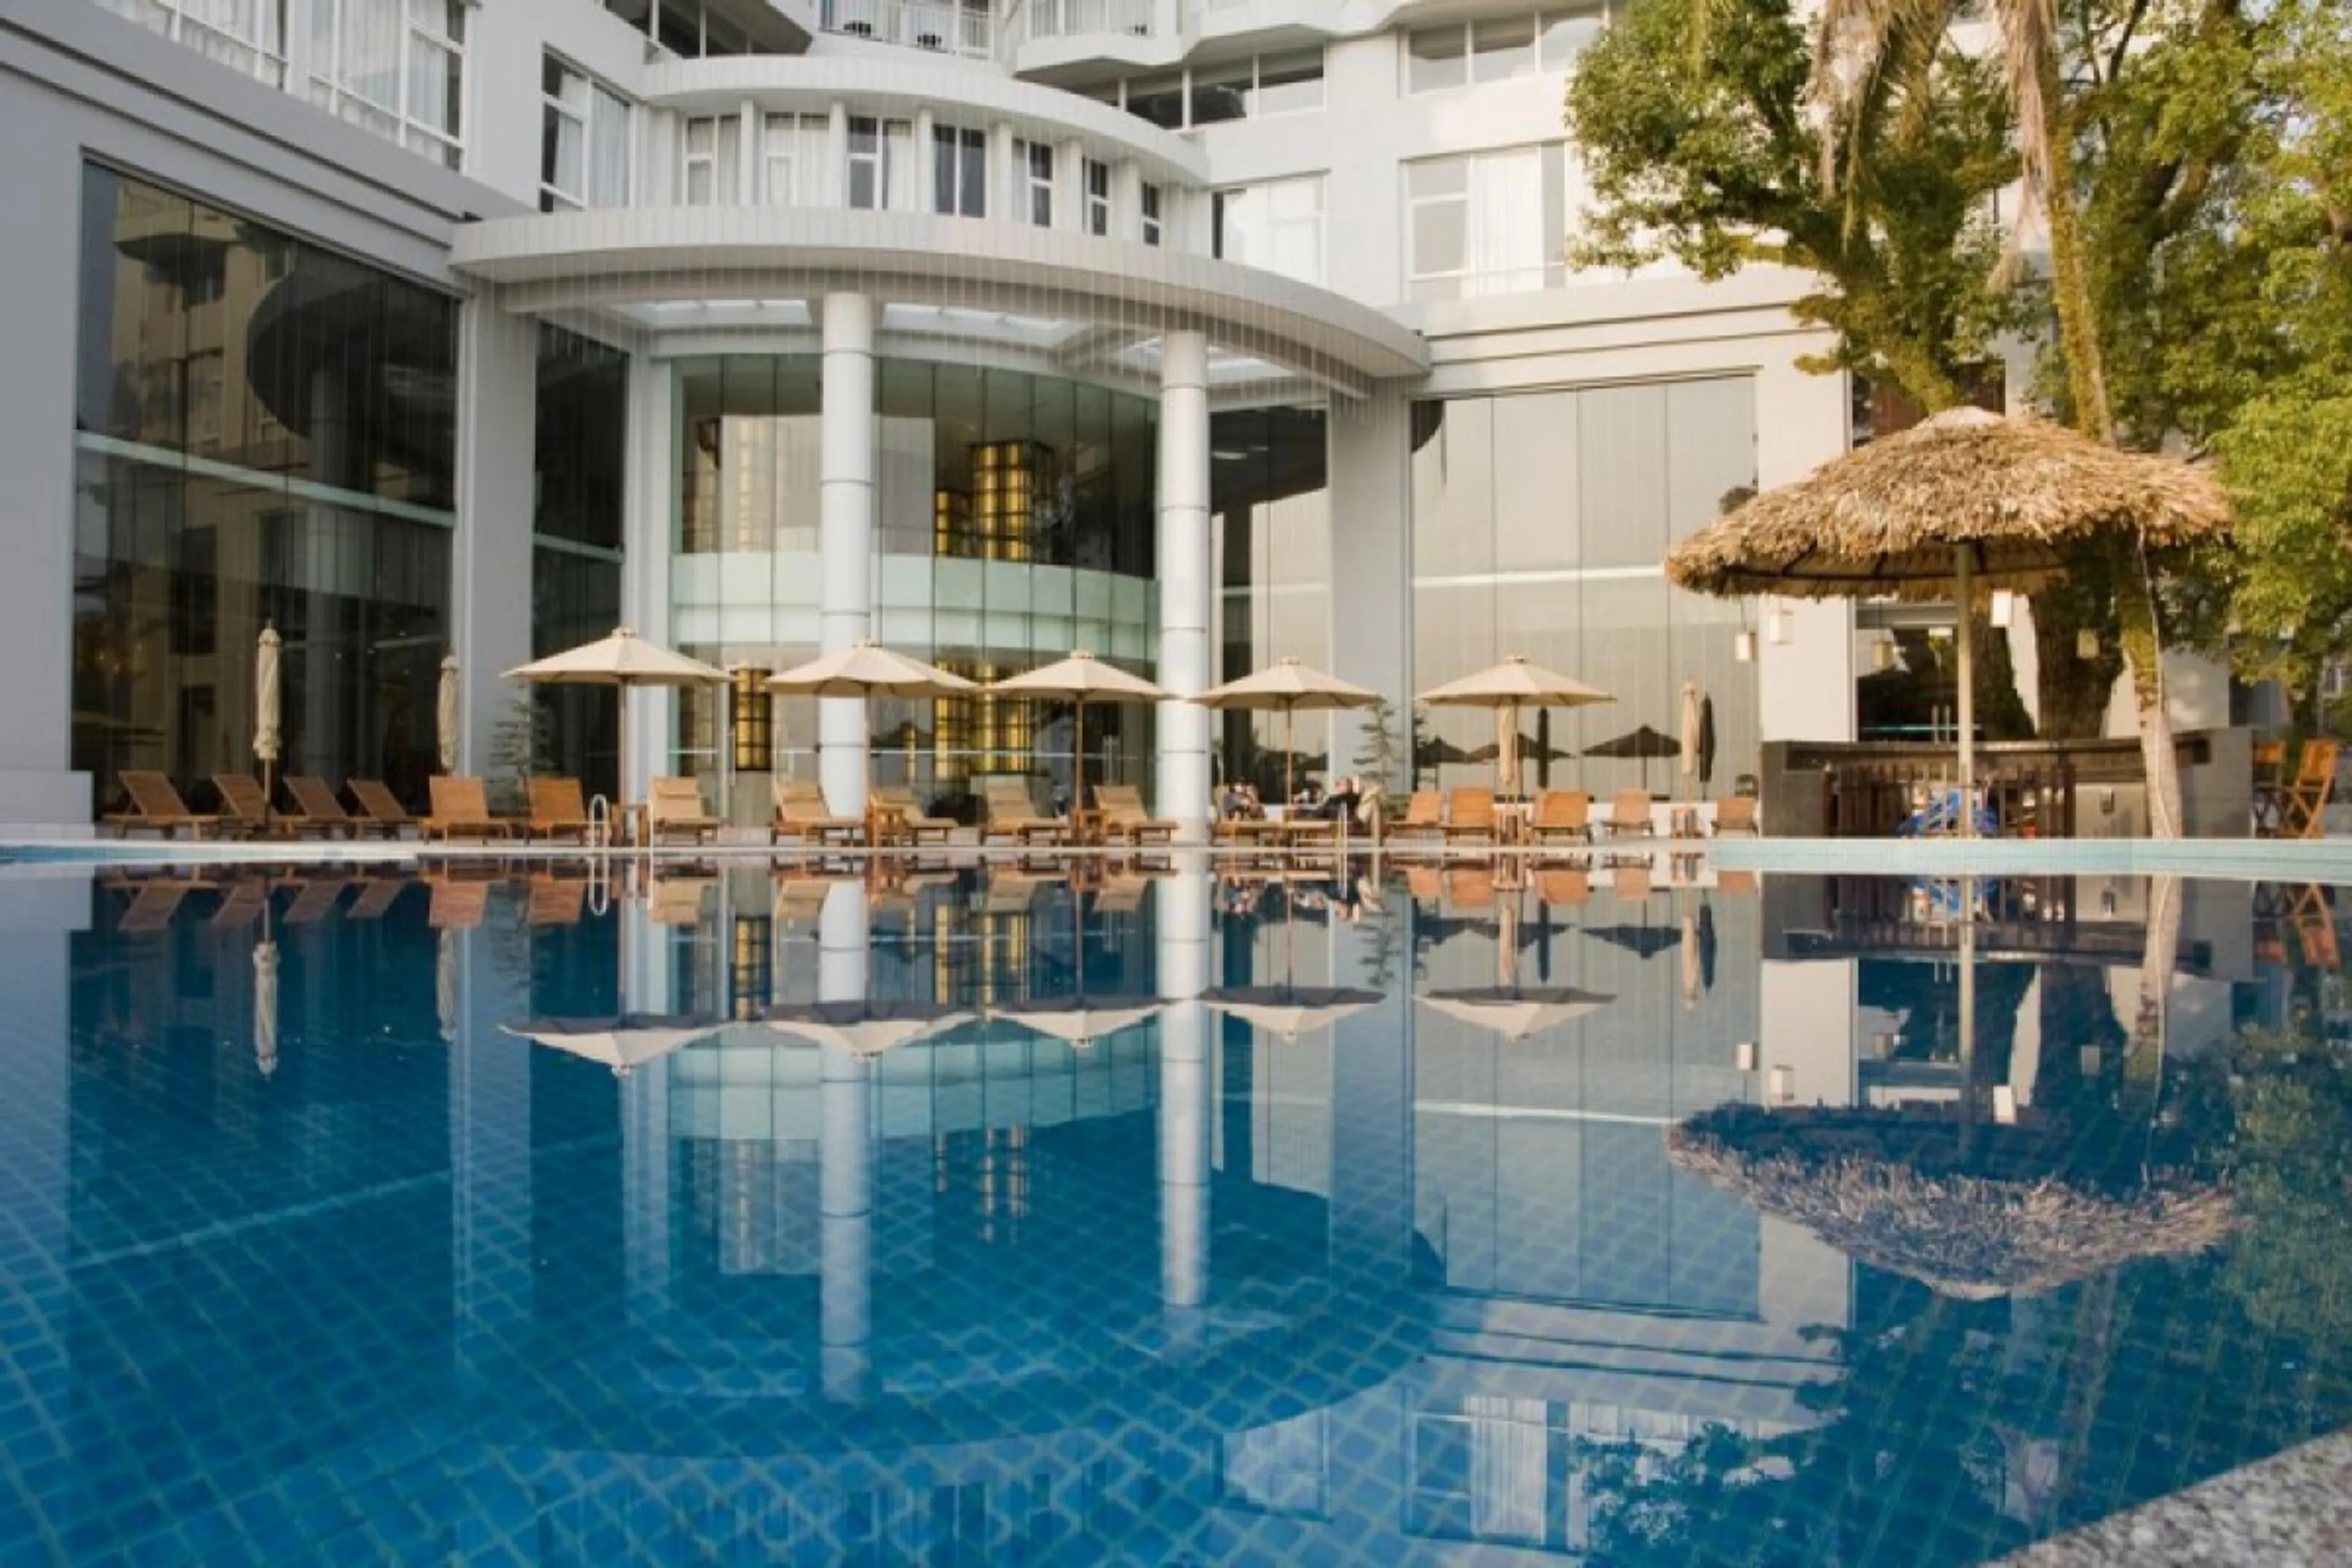 Lên kế hoạch cho kỳ nghỉ tuyệt vời với 5 khách sạn hàng đầu Quảng Ninh